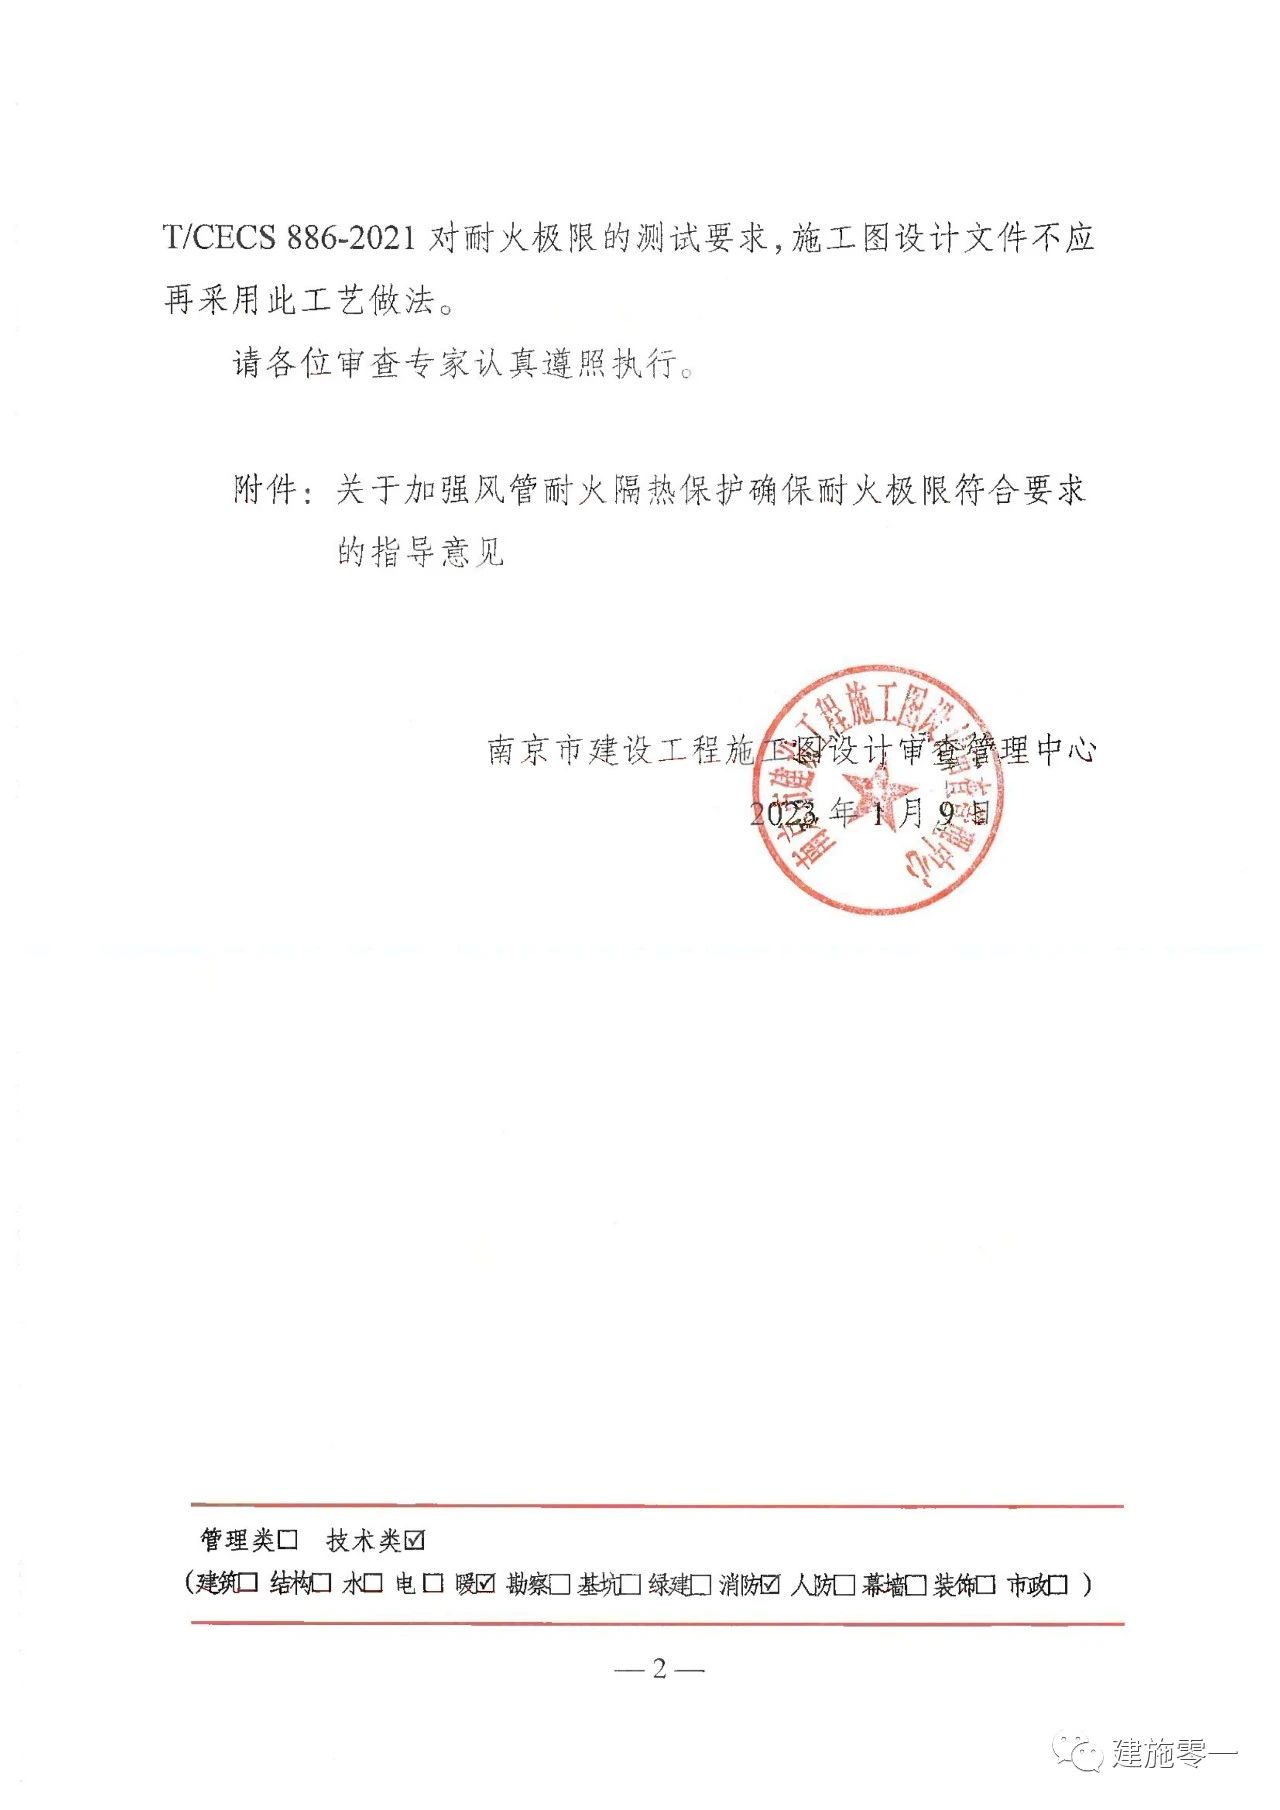 南京市发布《关于明确风管耐火极限施工图审查的相关要求》